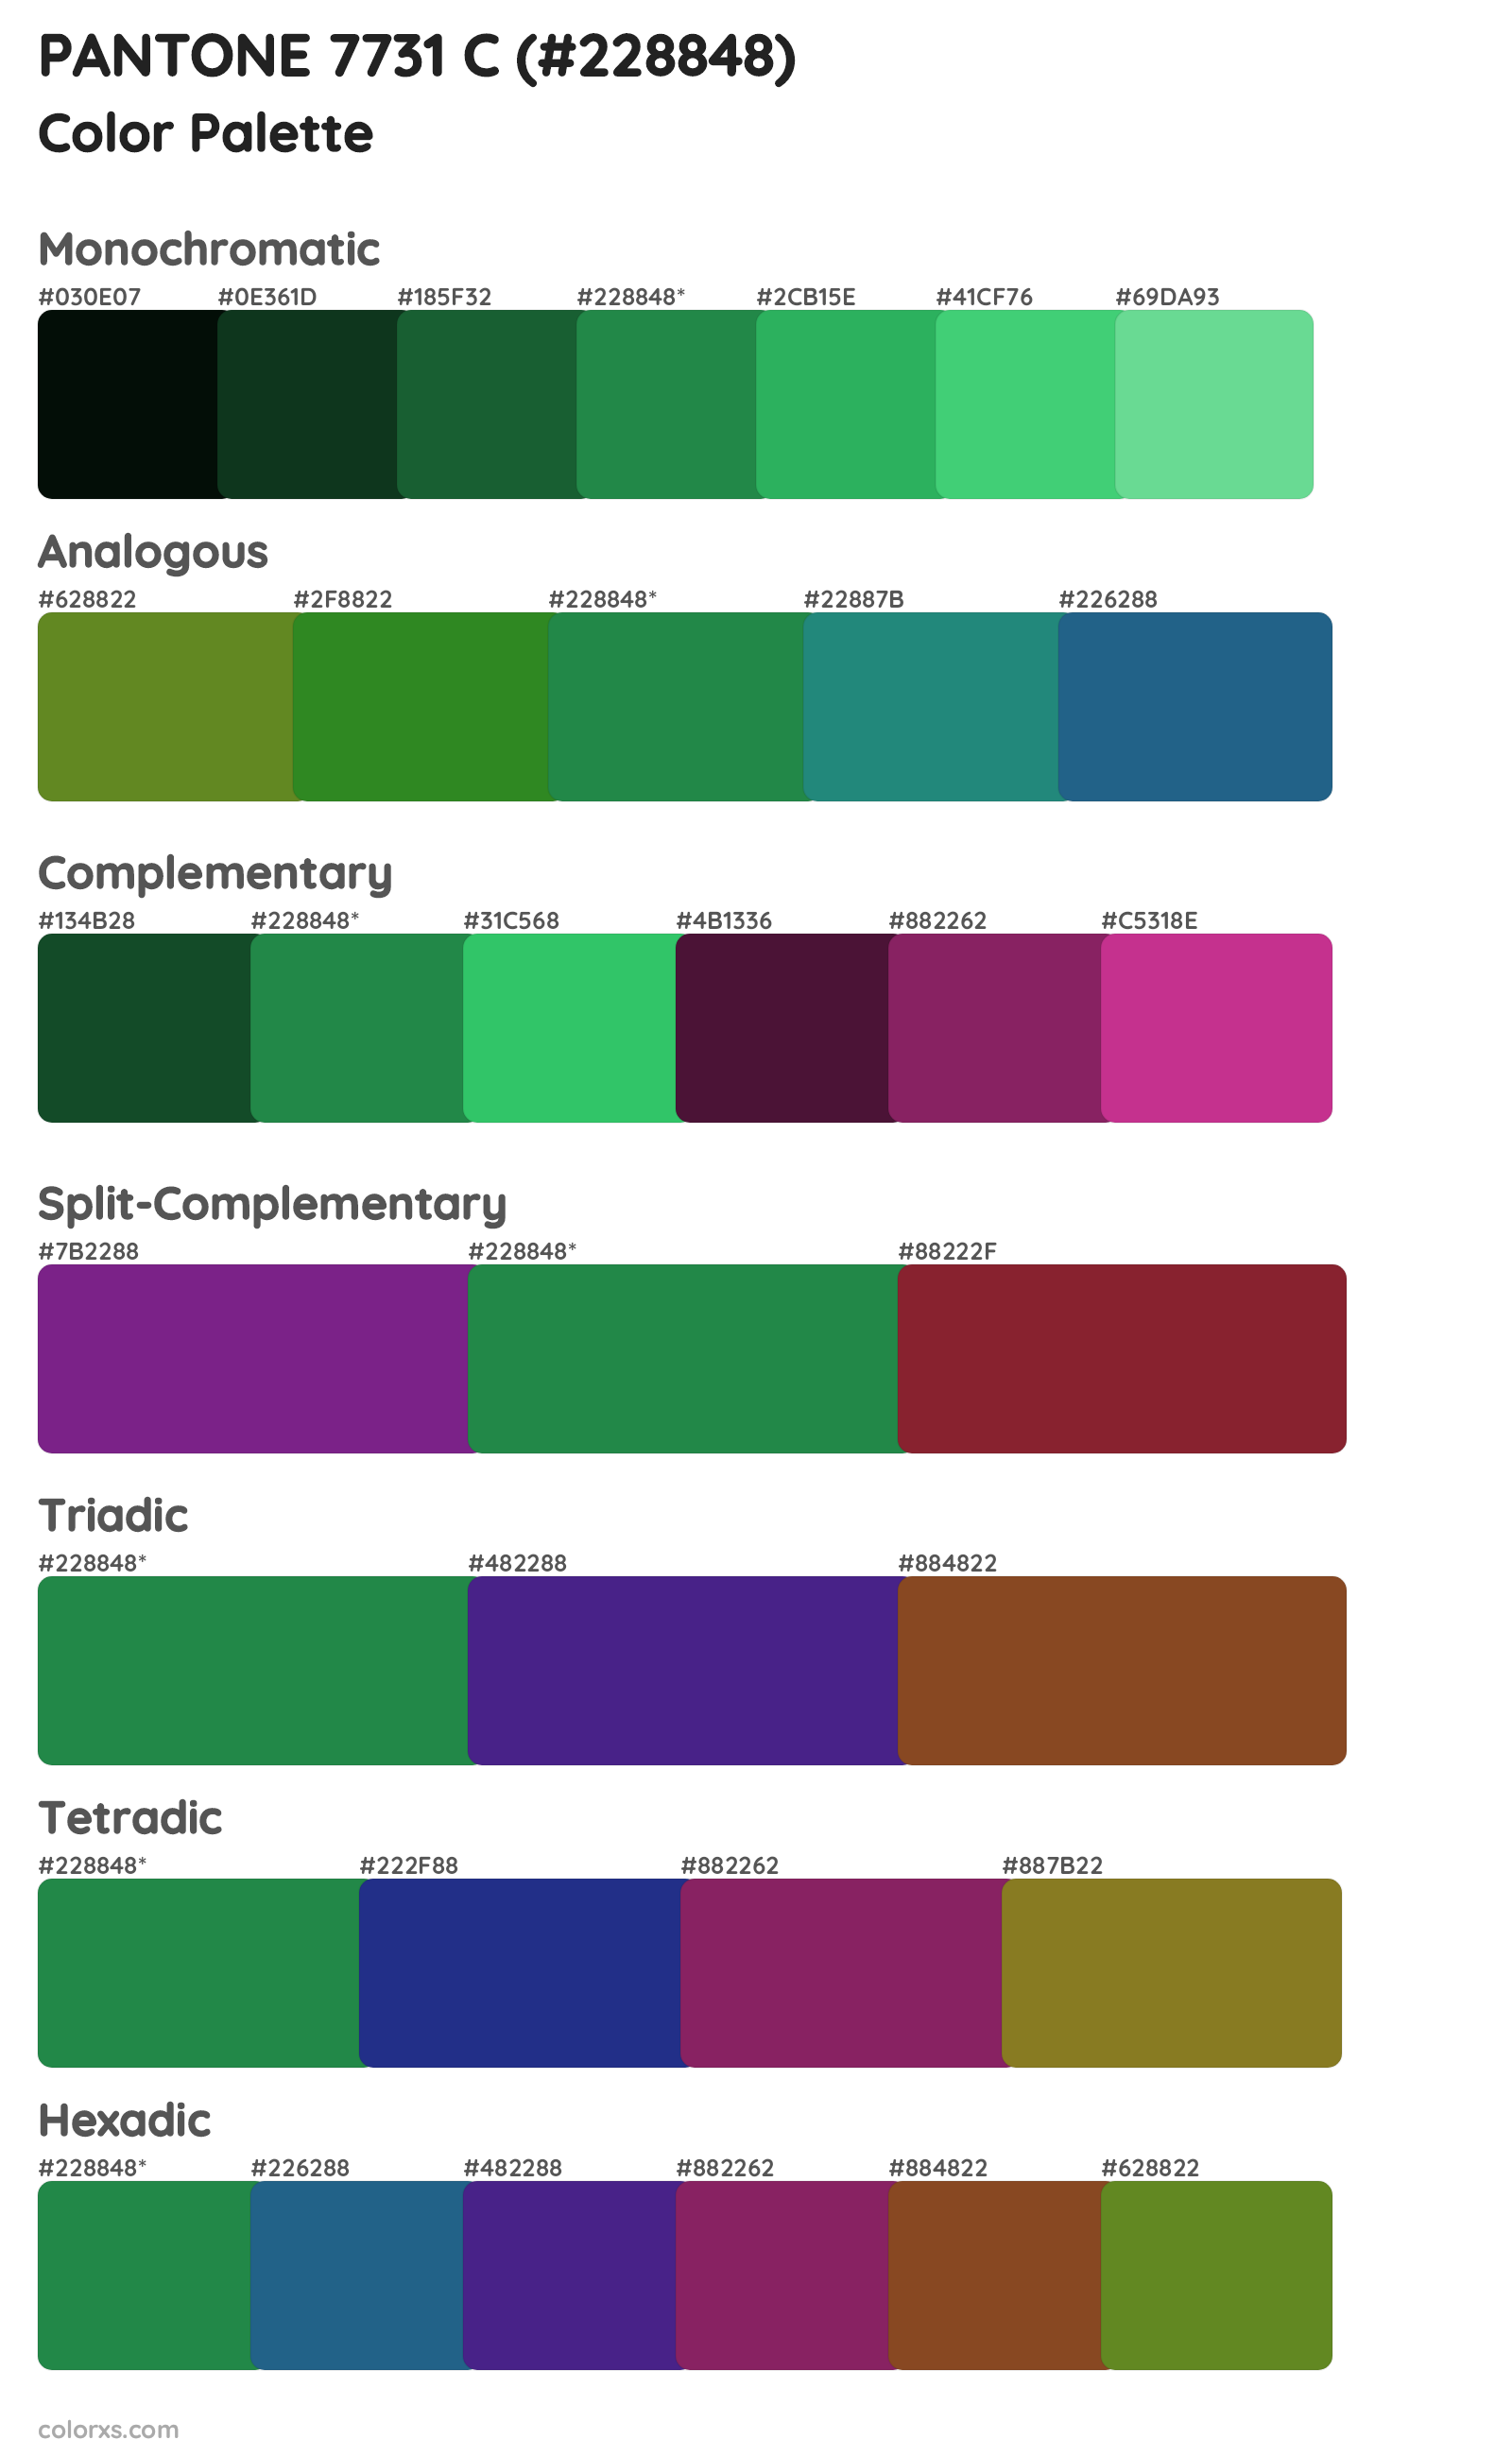 PANTONE 7731 C Color Scheme Palettes